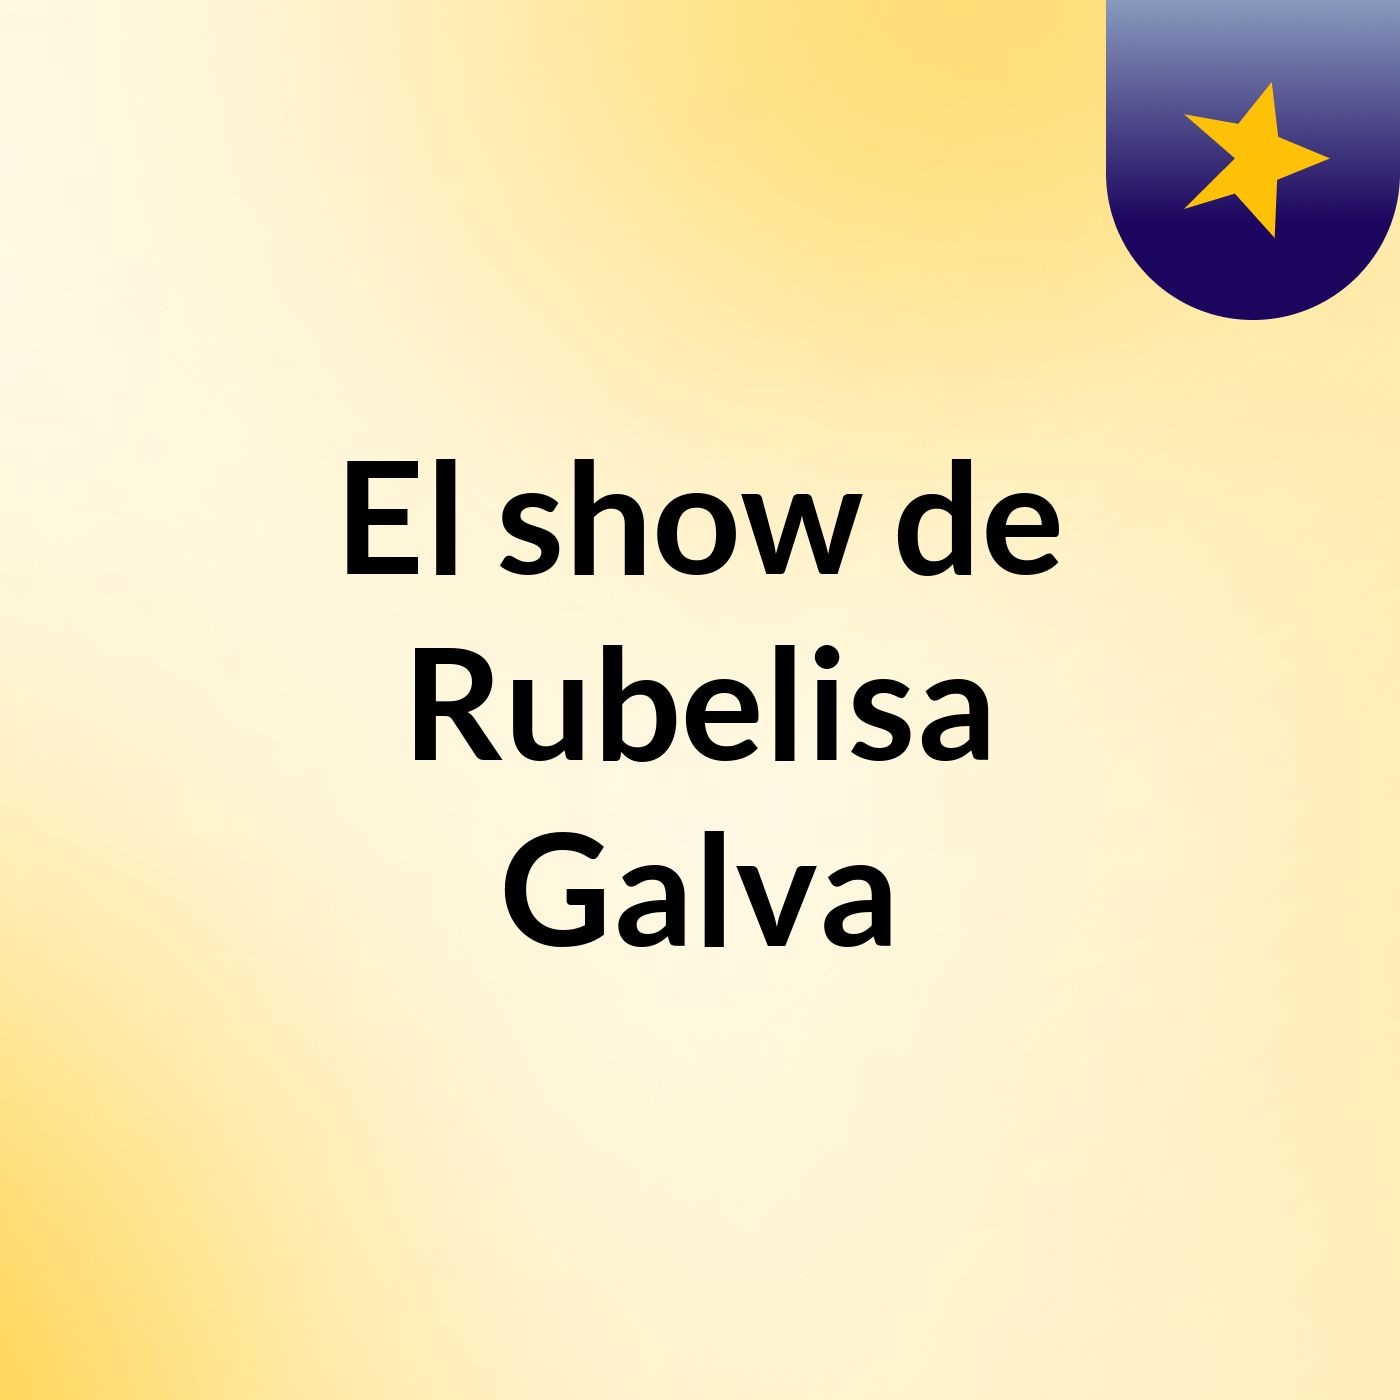 El show de Rubelisa Galva